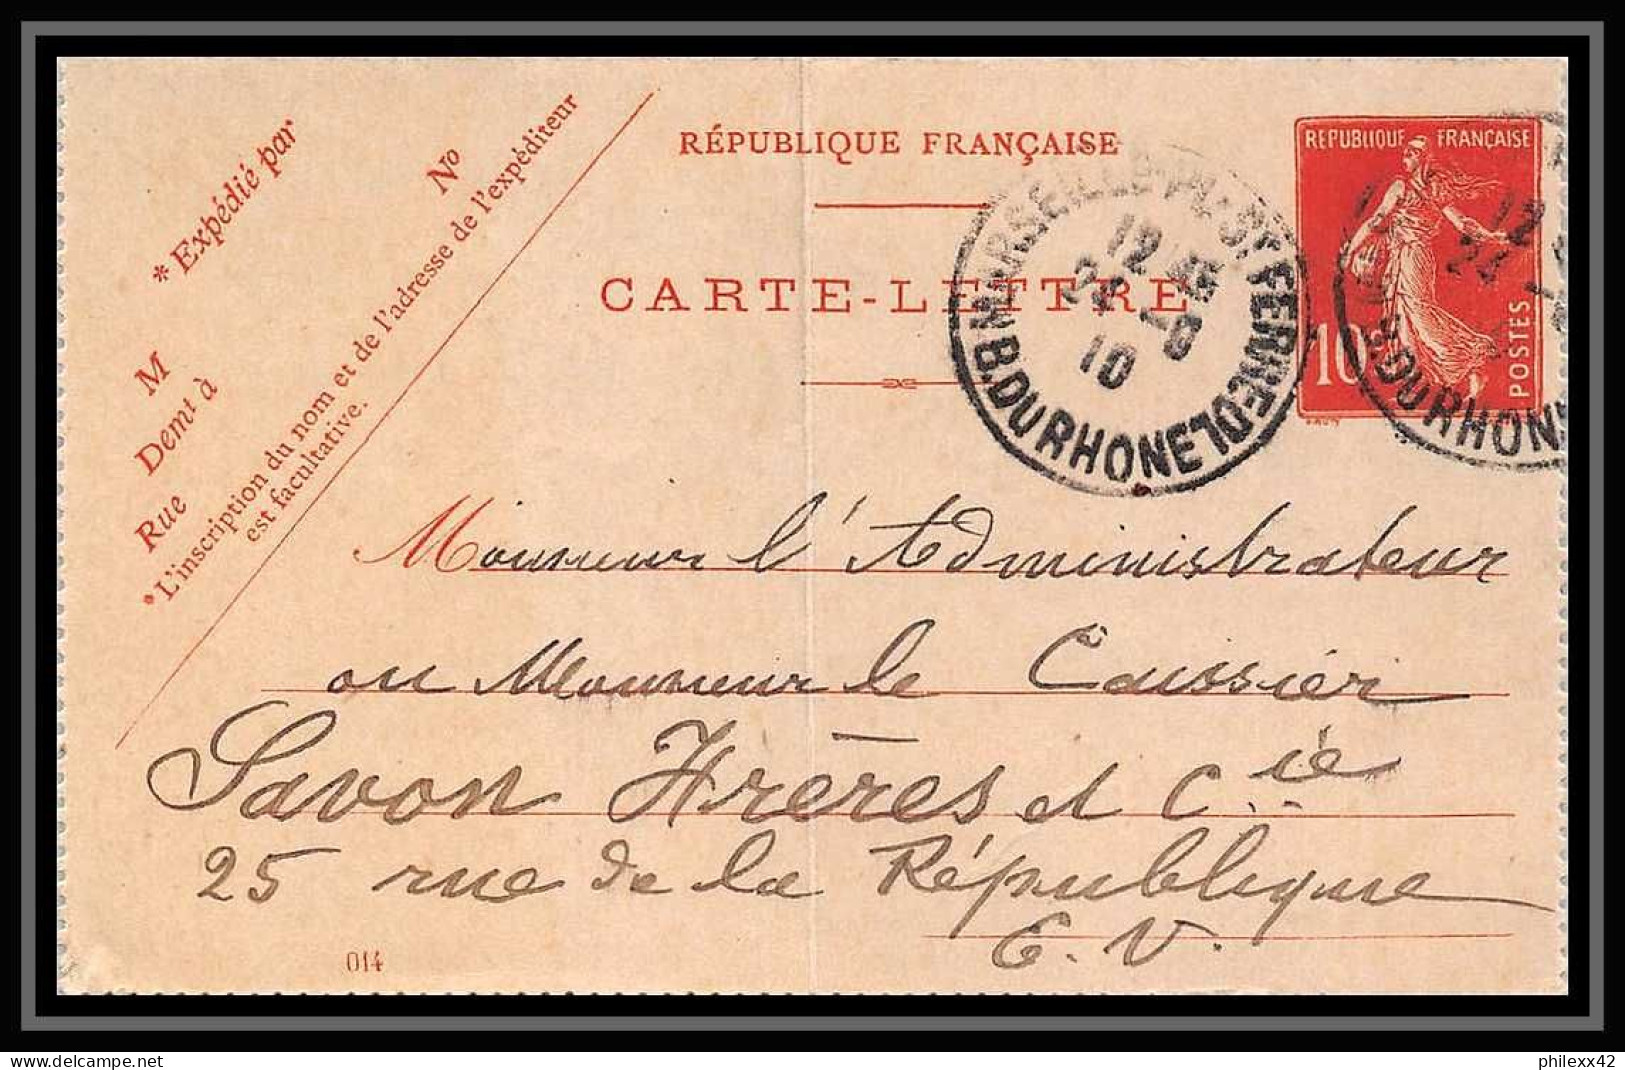 108050 LOT DE 16 Lettres dont recommandé et télégramme Bouches du rhone Marseille saint ferréol daguin